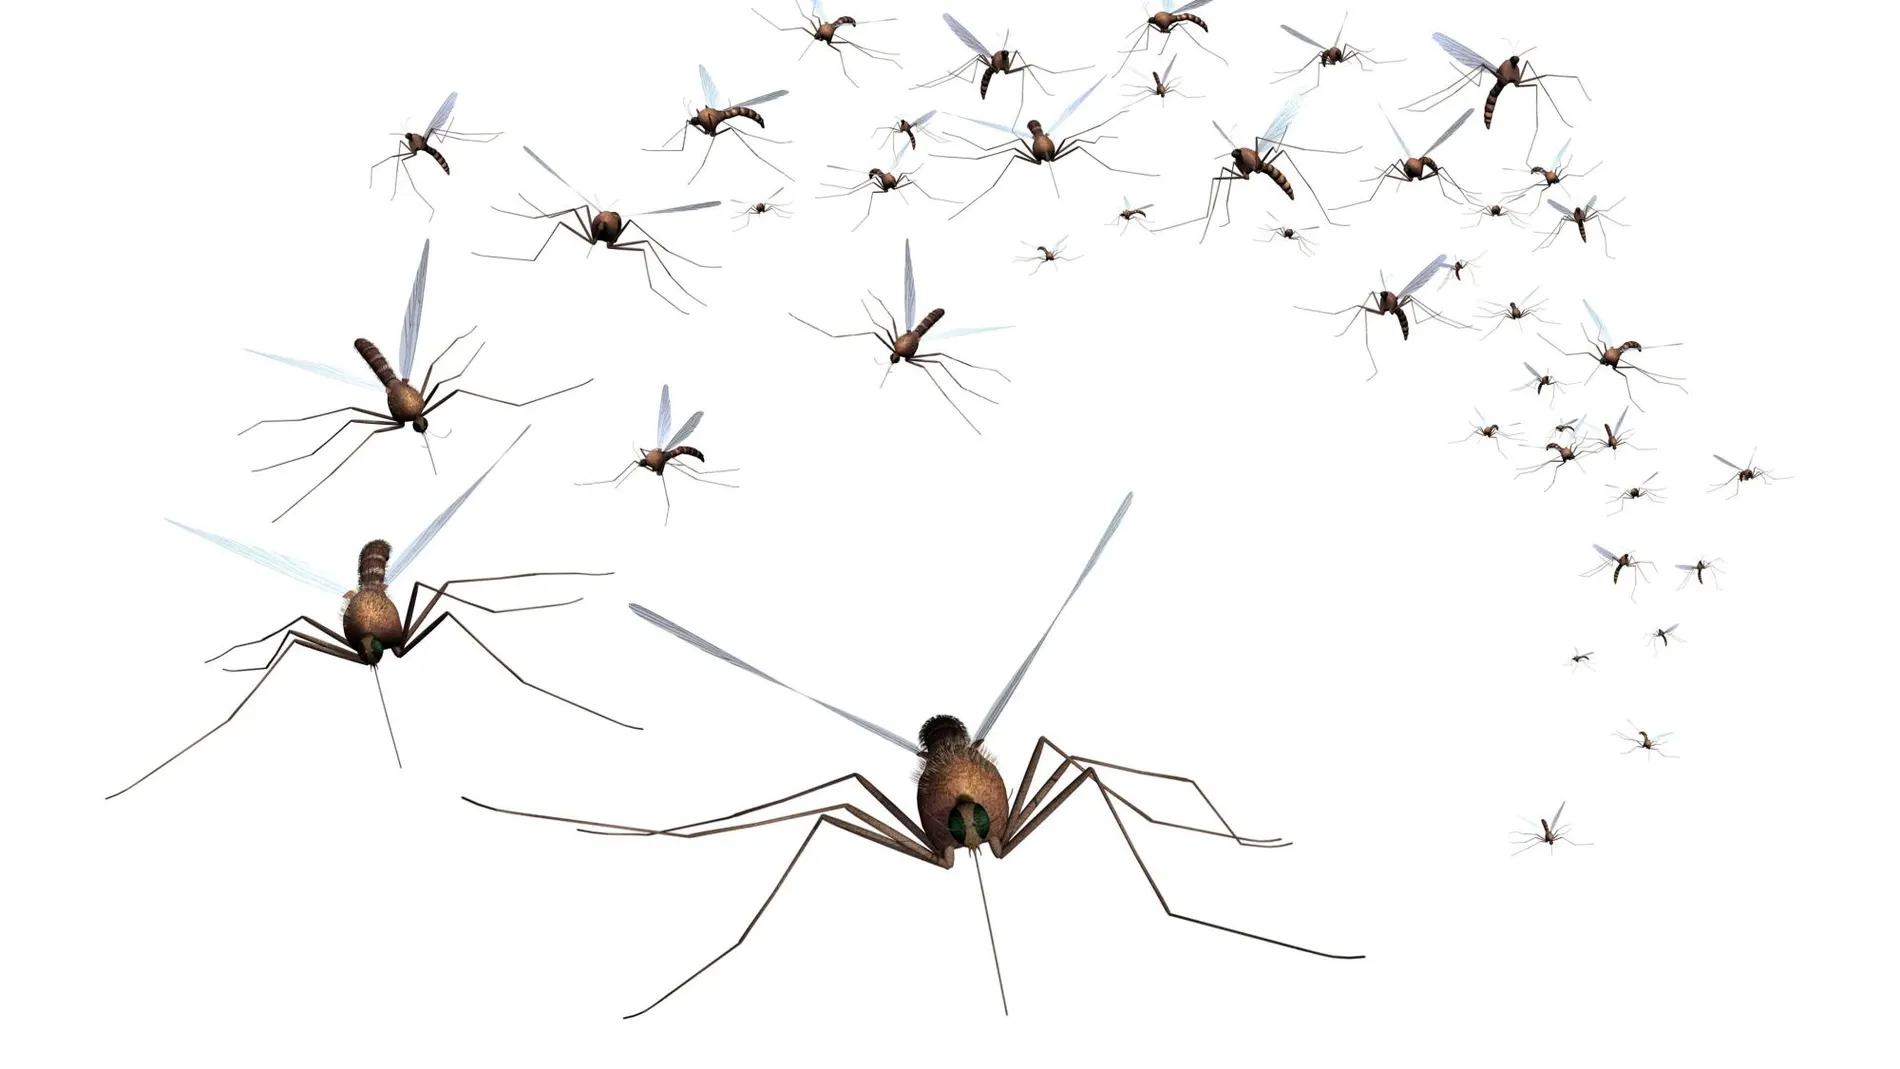 La proliferación de mosquitos preocupa a los científicos / Dreamstime